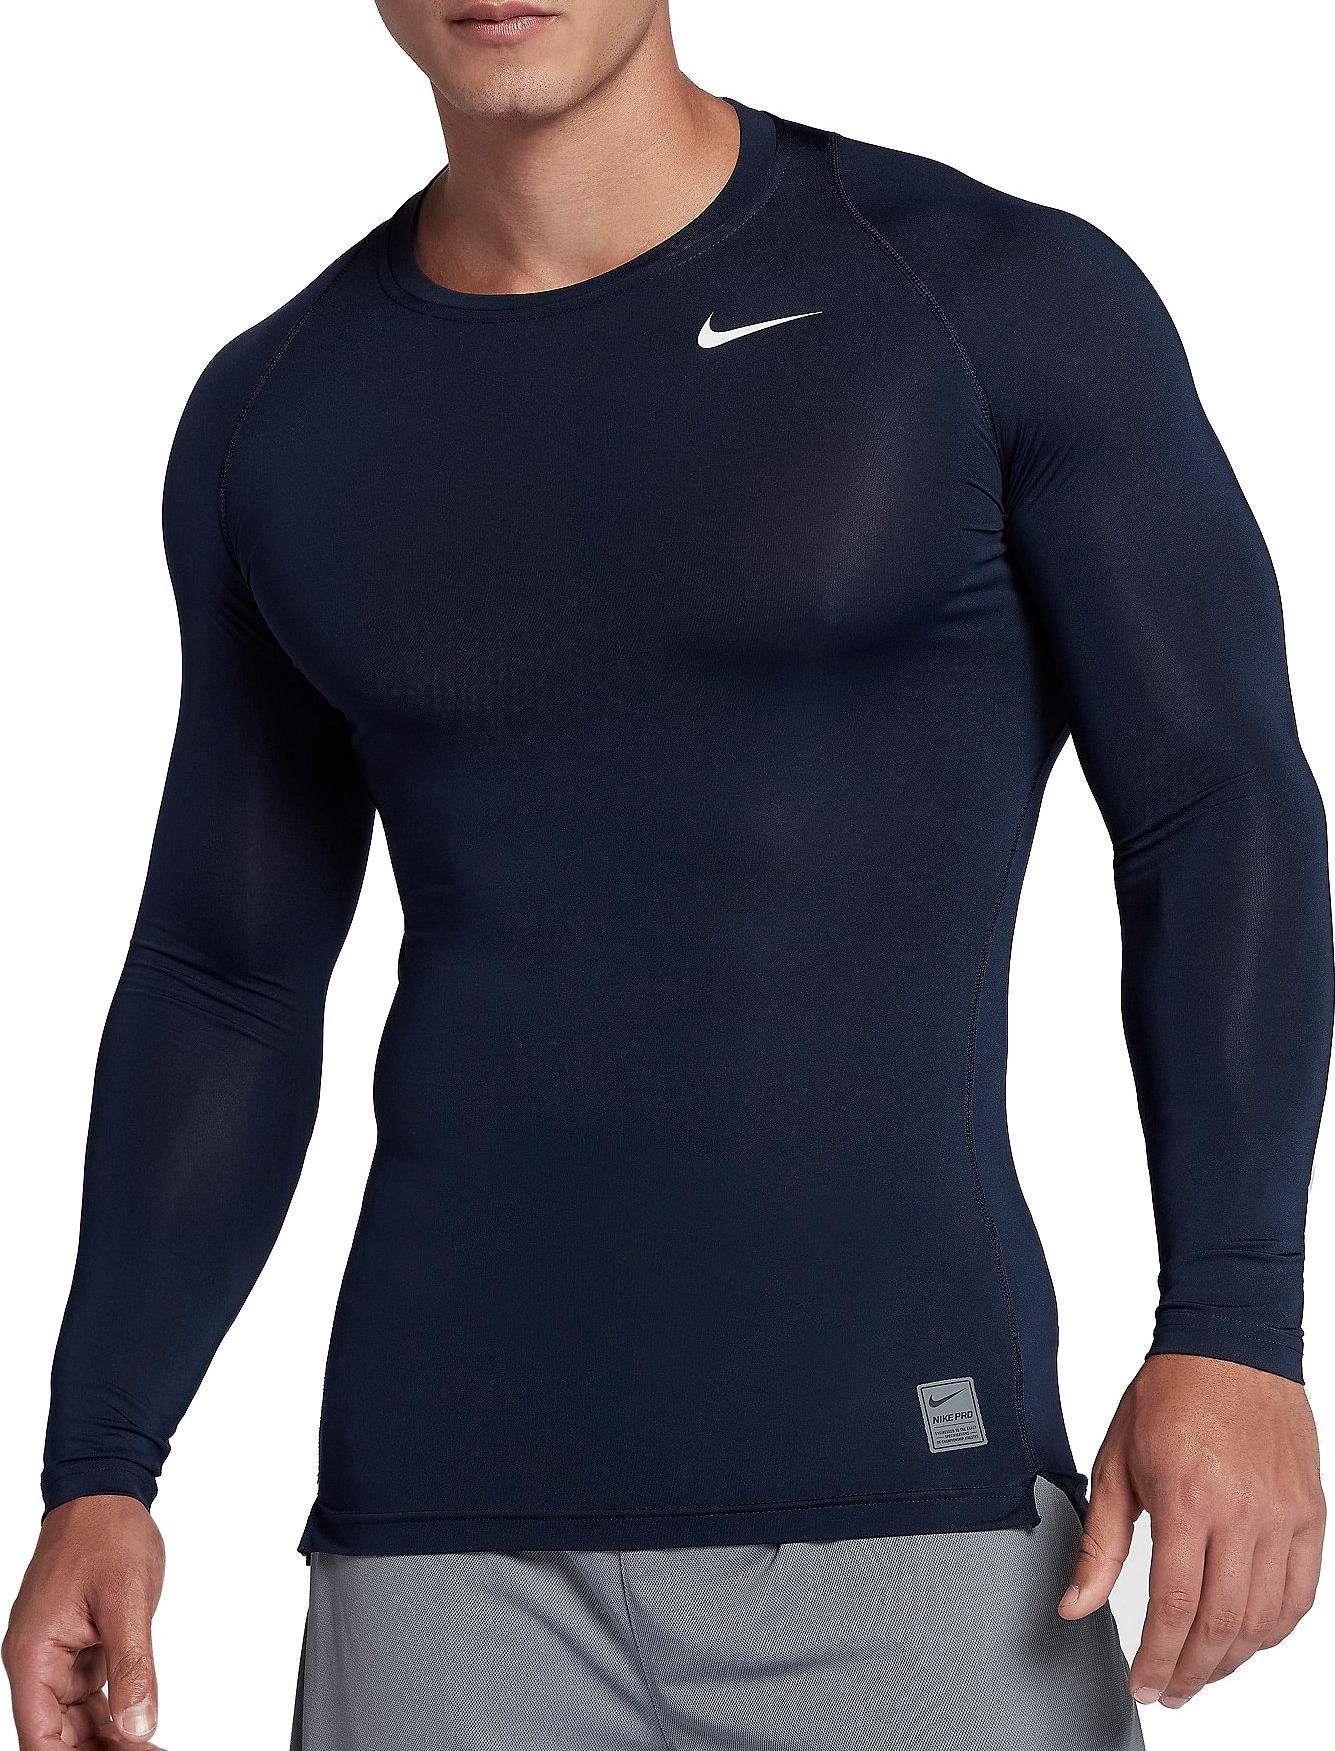 Long-sleeve T-shirt Nike COOL COMP LS